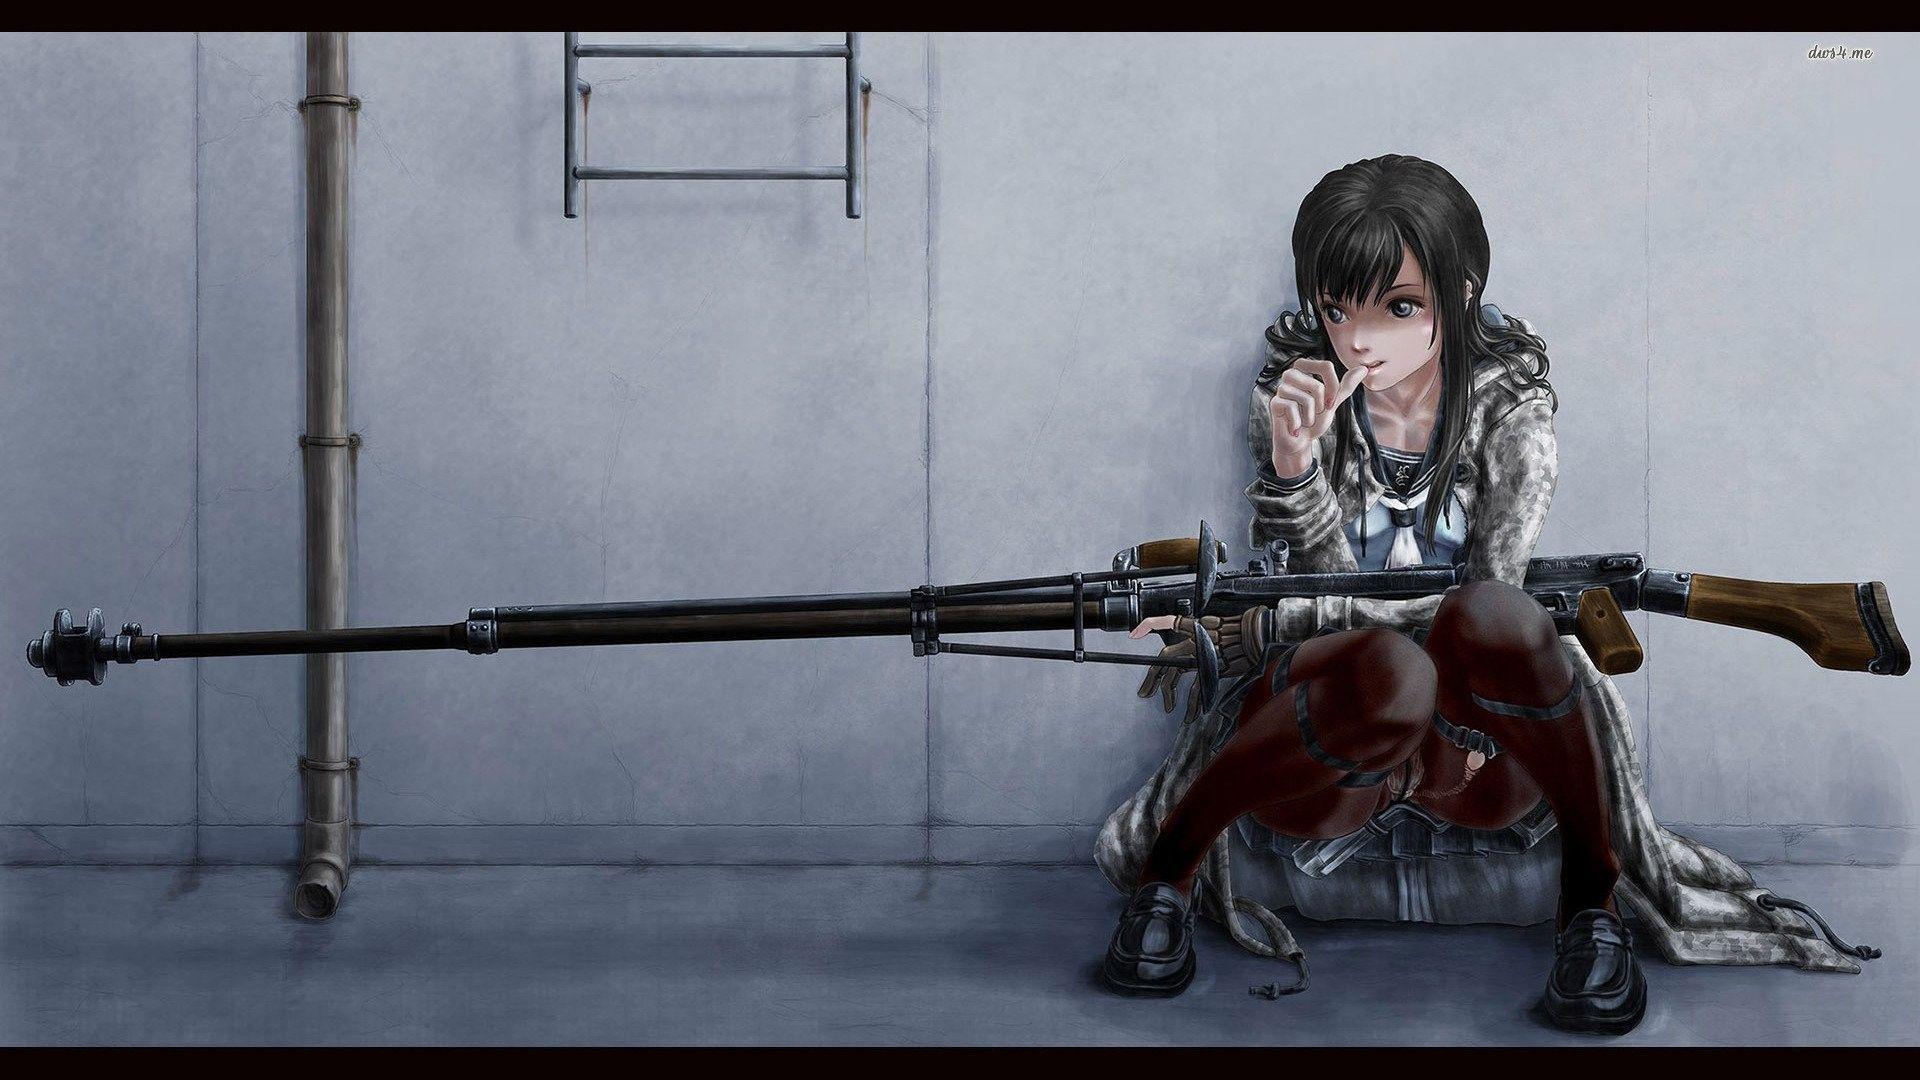 Anime Sniper Wallpaper. Sniper girl, Anime